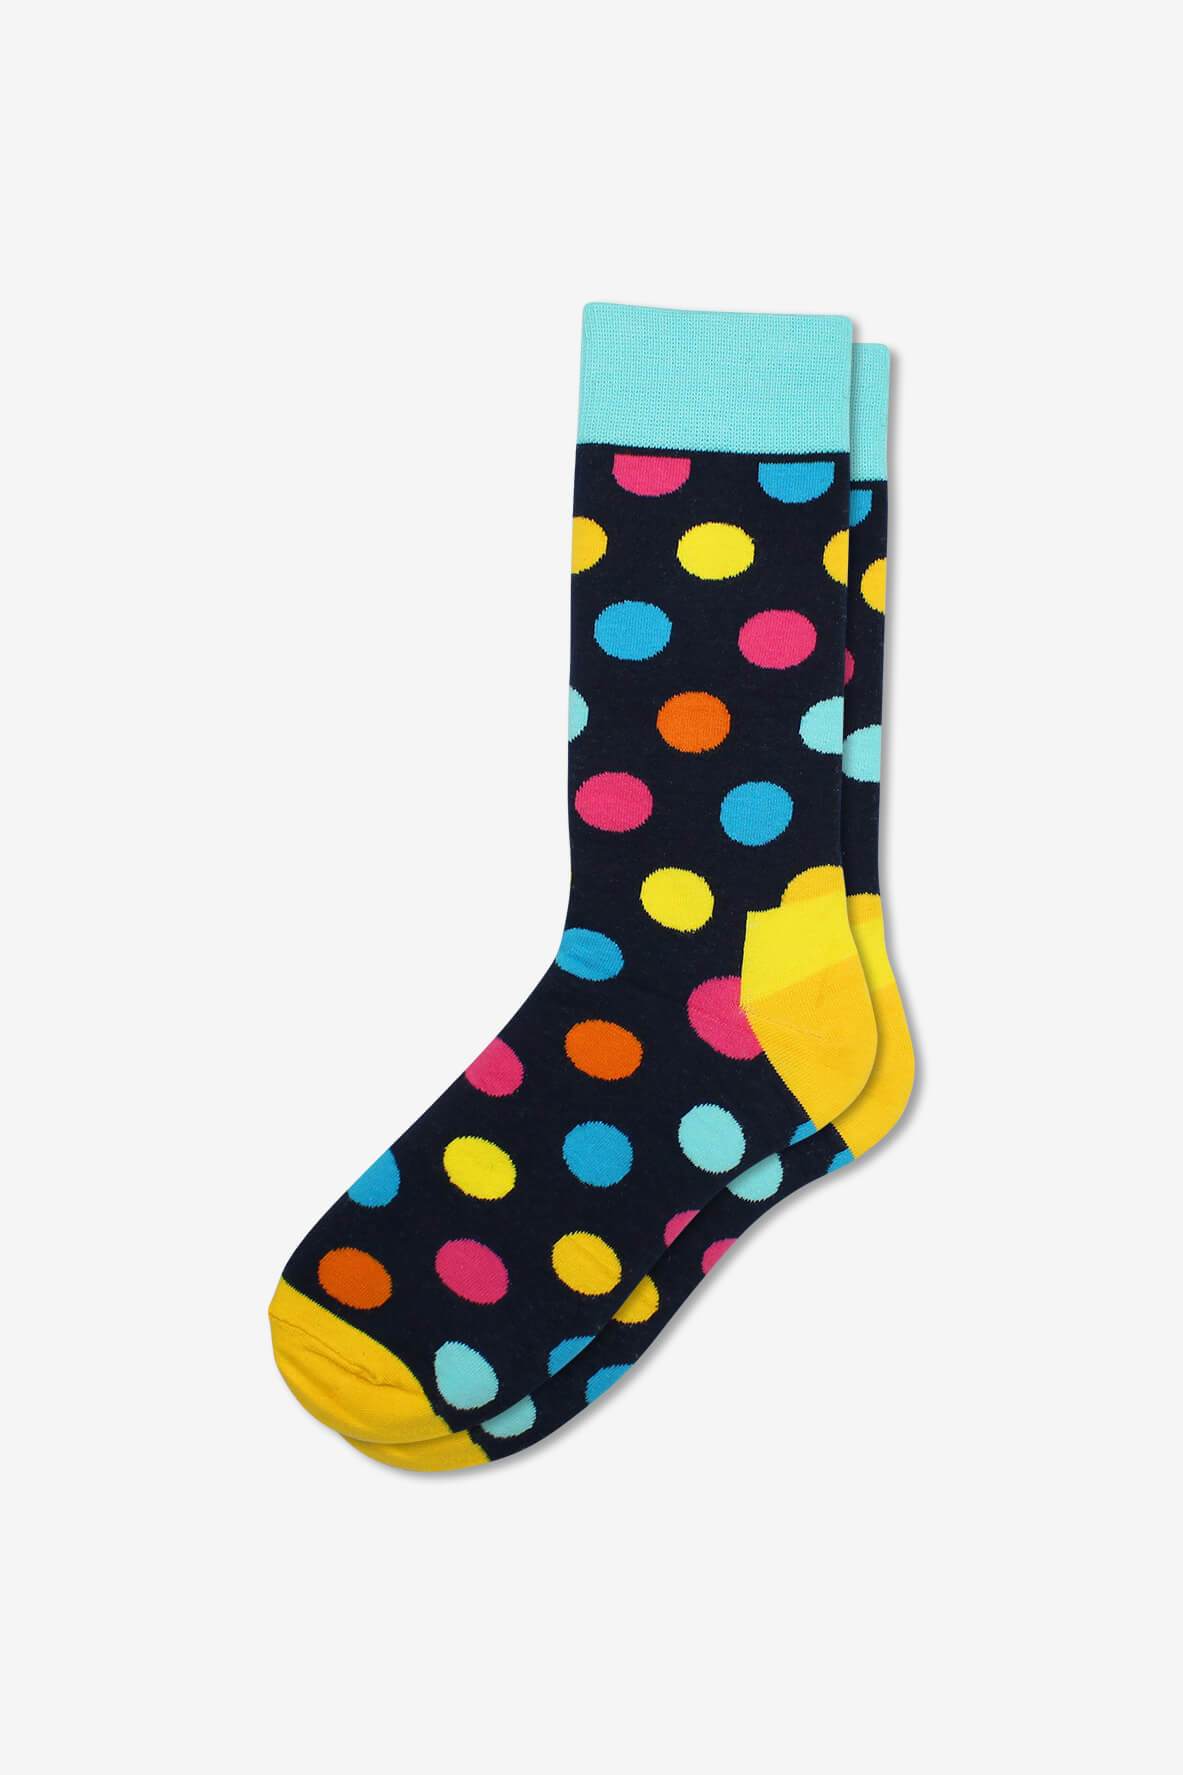 Socks IMG_5342, socks, GoTie